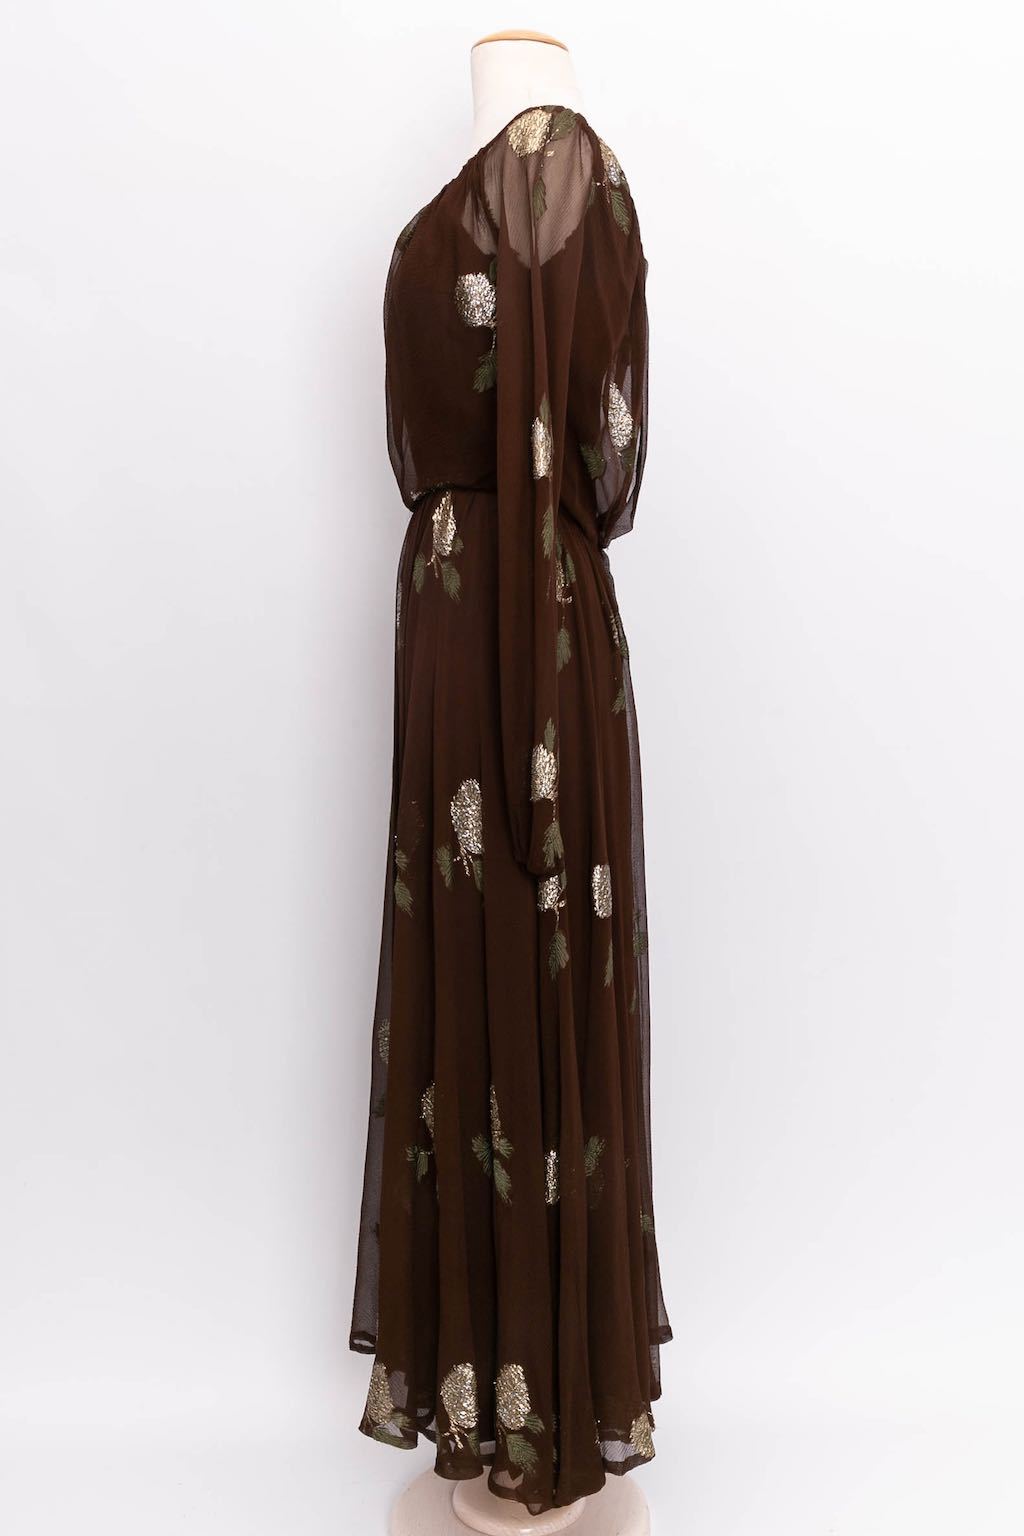 Robe Jean Patou Haute Couture Hiver 1974/75